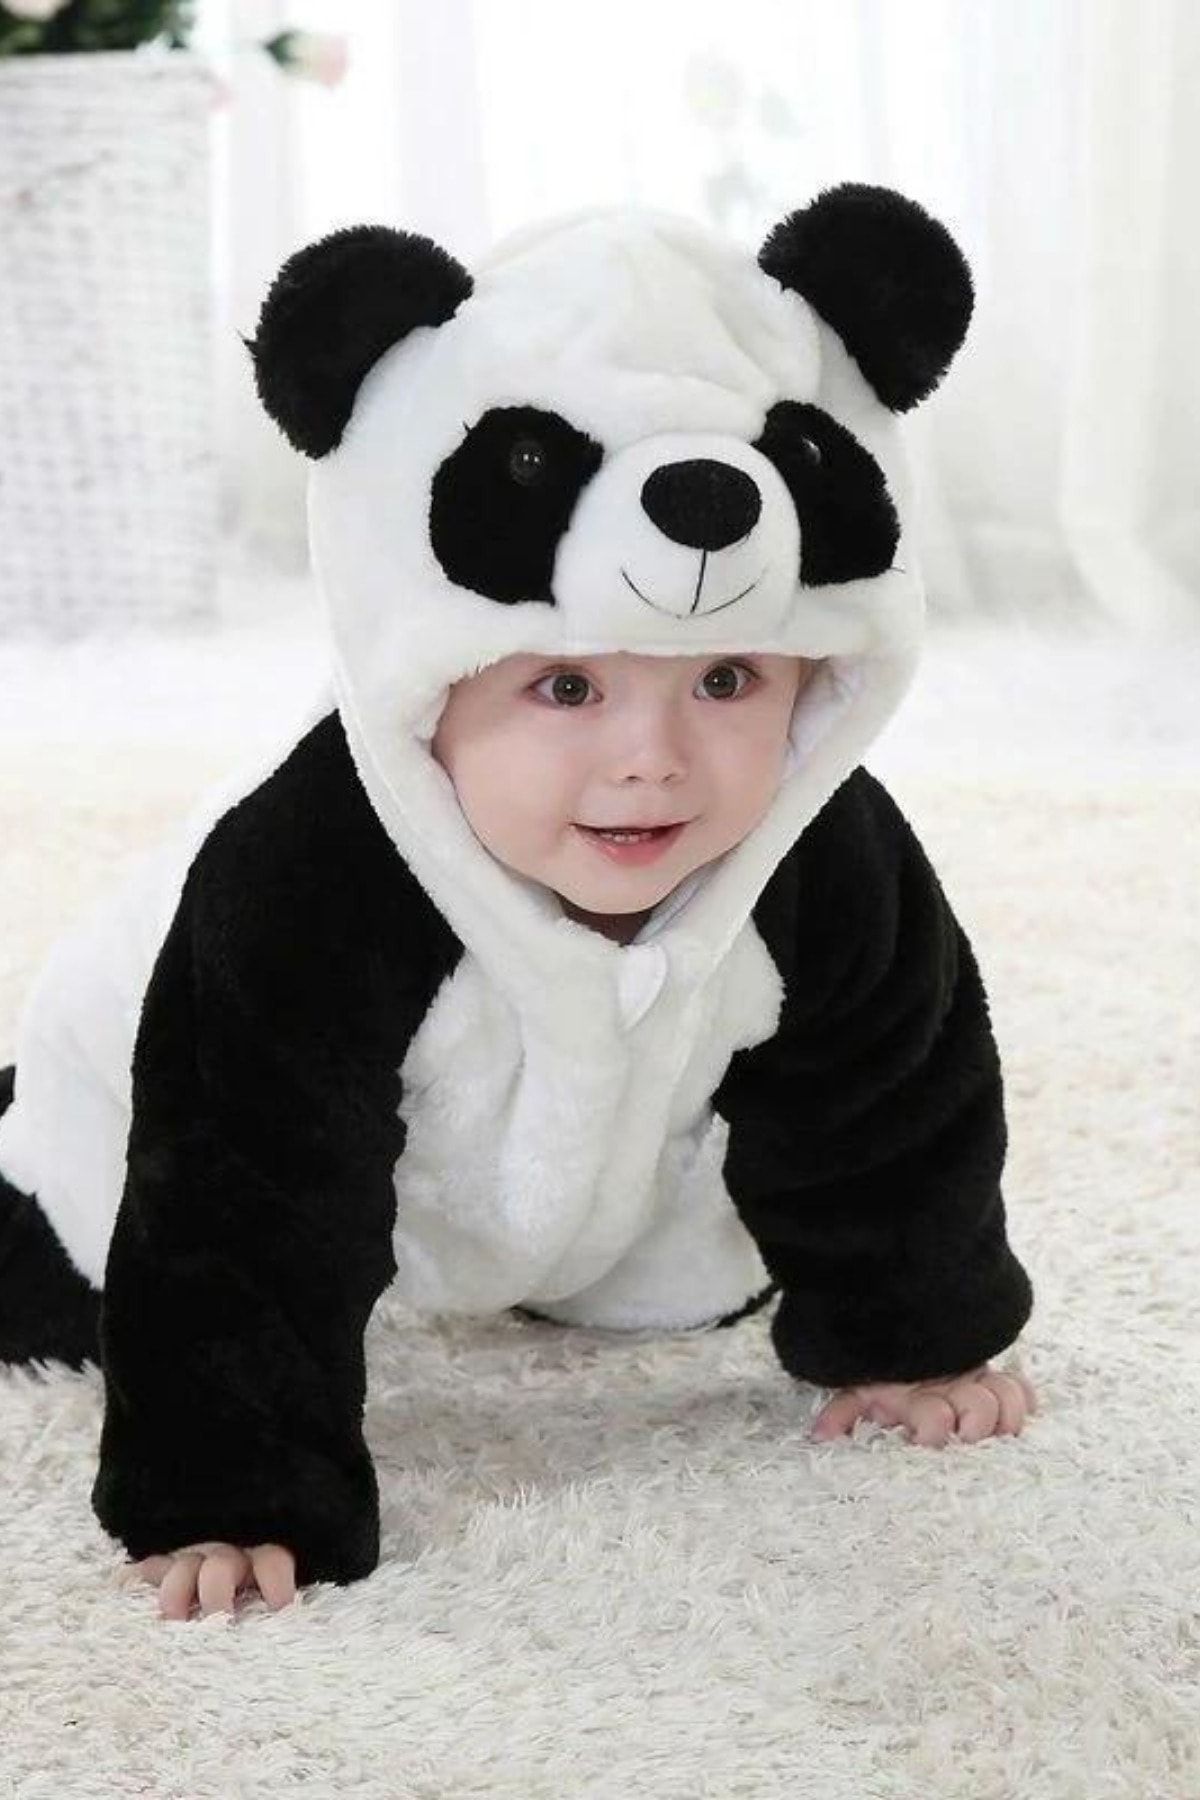 sebura Peluş Unixex Fermuarlı Panda Bebek Uyku Tulumu Kışlık